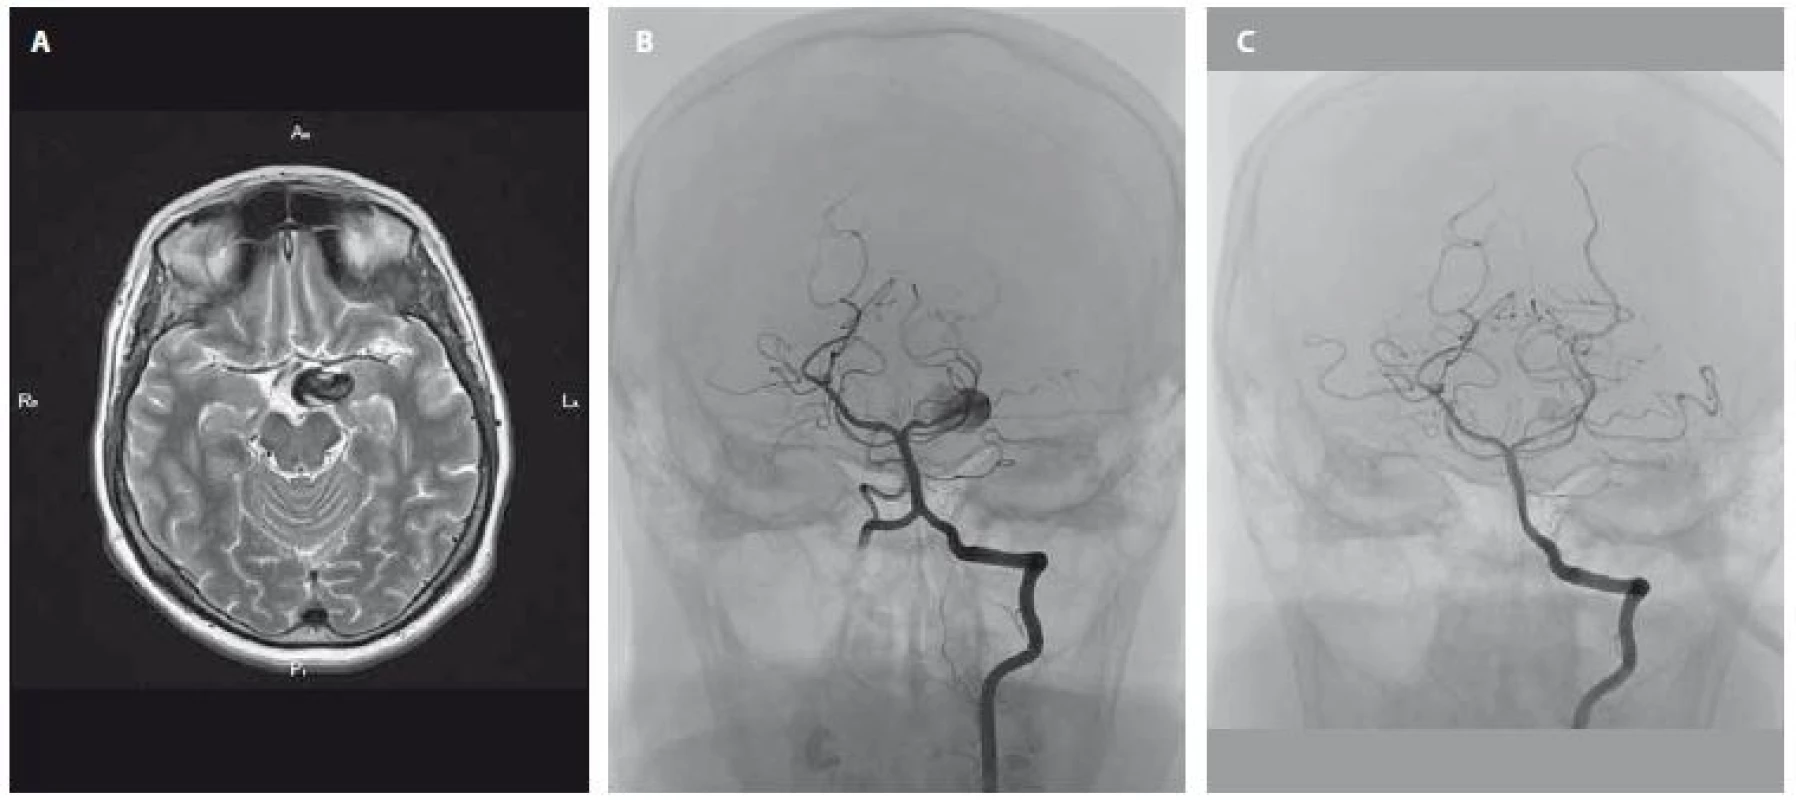 Zčásti trombózované aneuryzma velikosti 23 × 16 × 11 mm v blízkosti úseku P1 arteria cerebri posterior vlevo před ošetřením
(A – MR, B – DSA). C – kontrolní DSA aneuryzmatu po úspěšném zavedení flow-diverteru.<br>
Fig. 1. Partially thrombosed aneurysm (size 23 × 16 × 11 mm) near the P1 section of the cerebral posterior artery before treatment
(A – MRI, B – DSA). C – control DSA of aneurysm after successful endovascular treatment with a flow-diverter.